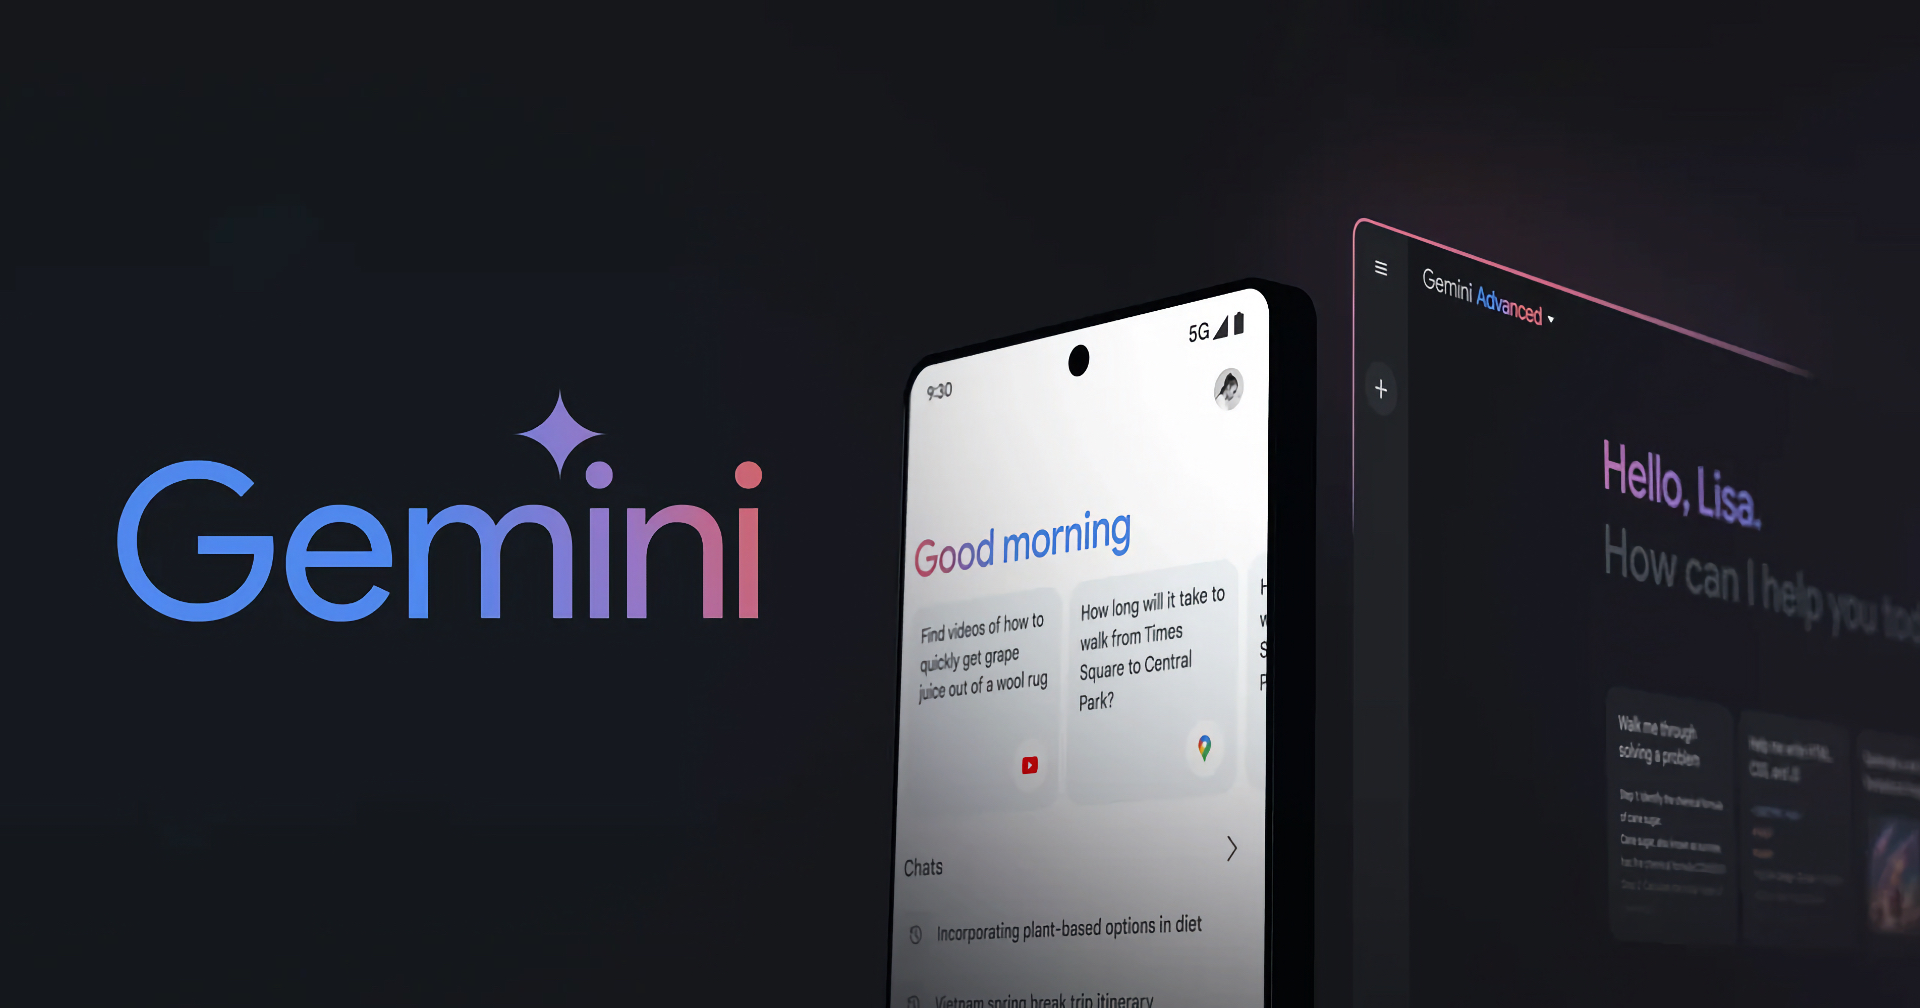 รีแบรนด์ Bard ใหม่ในชื่อ ‘Gemini’ พร้อมเปิดตัวแอปใหม่ Gemini บนสมาร์ตโฟน